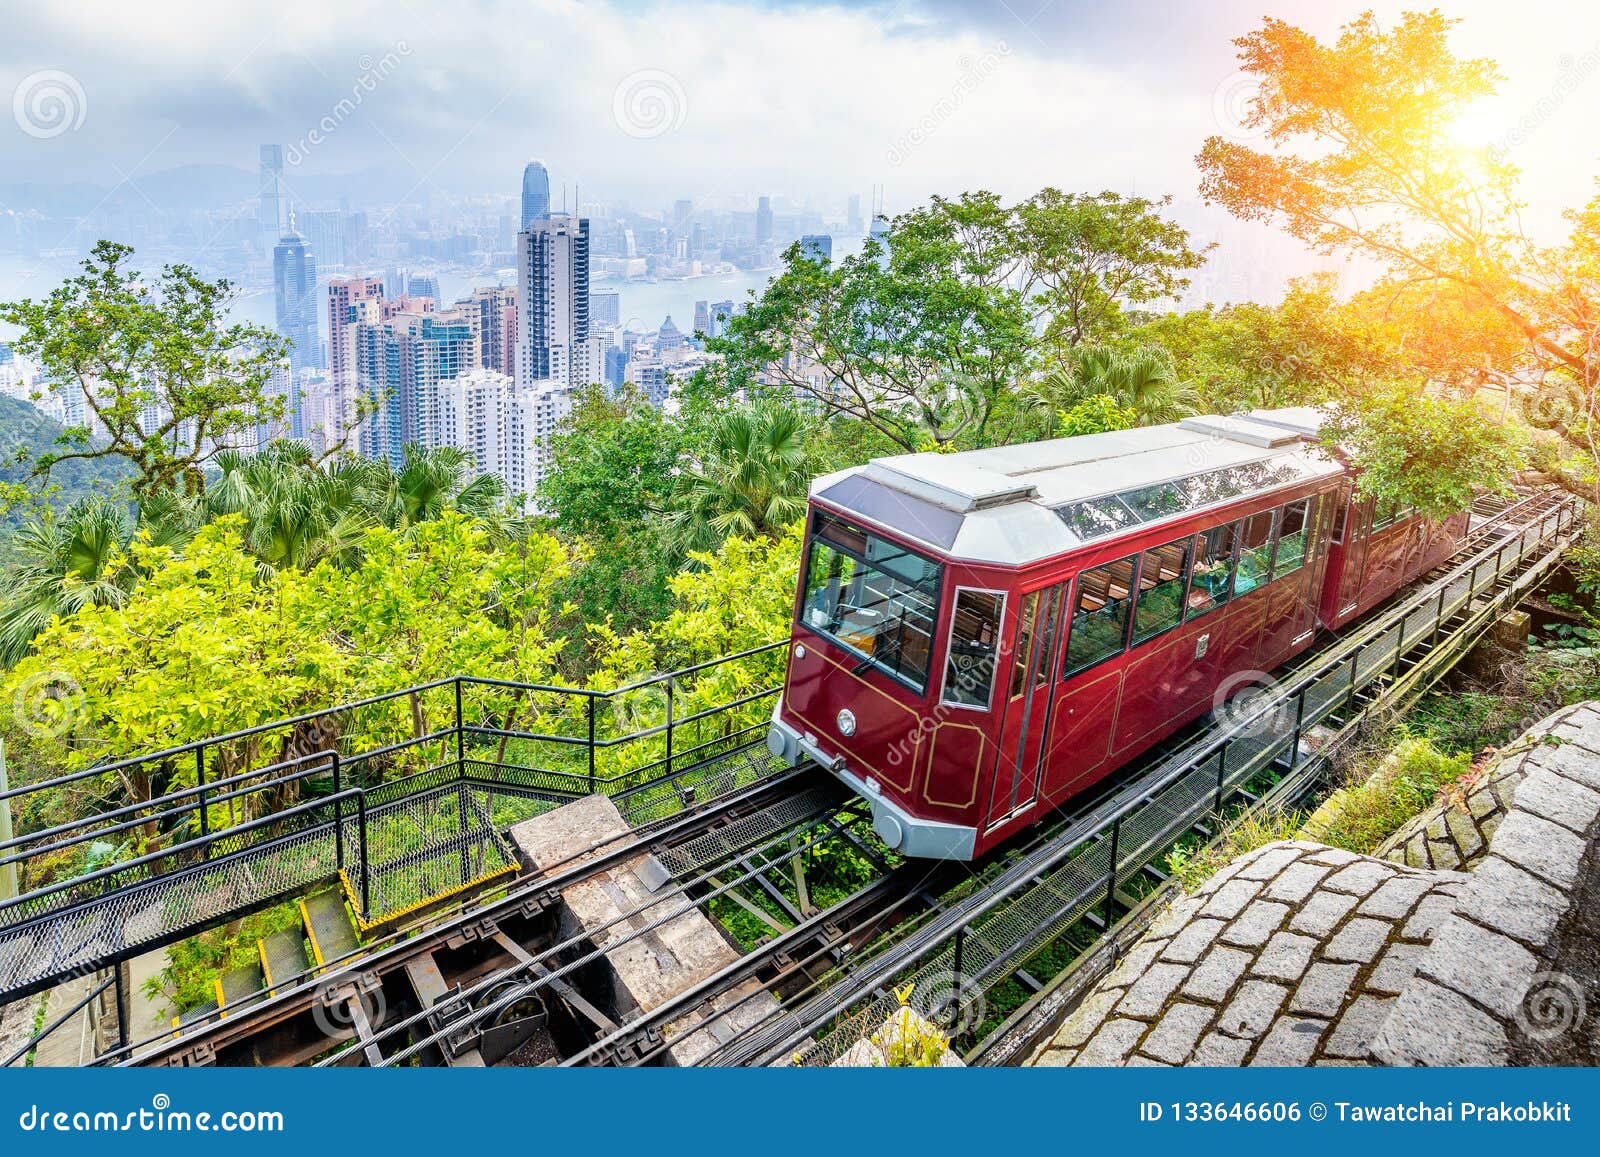 view of victoria peak tram in hong kong